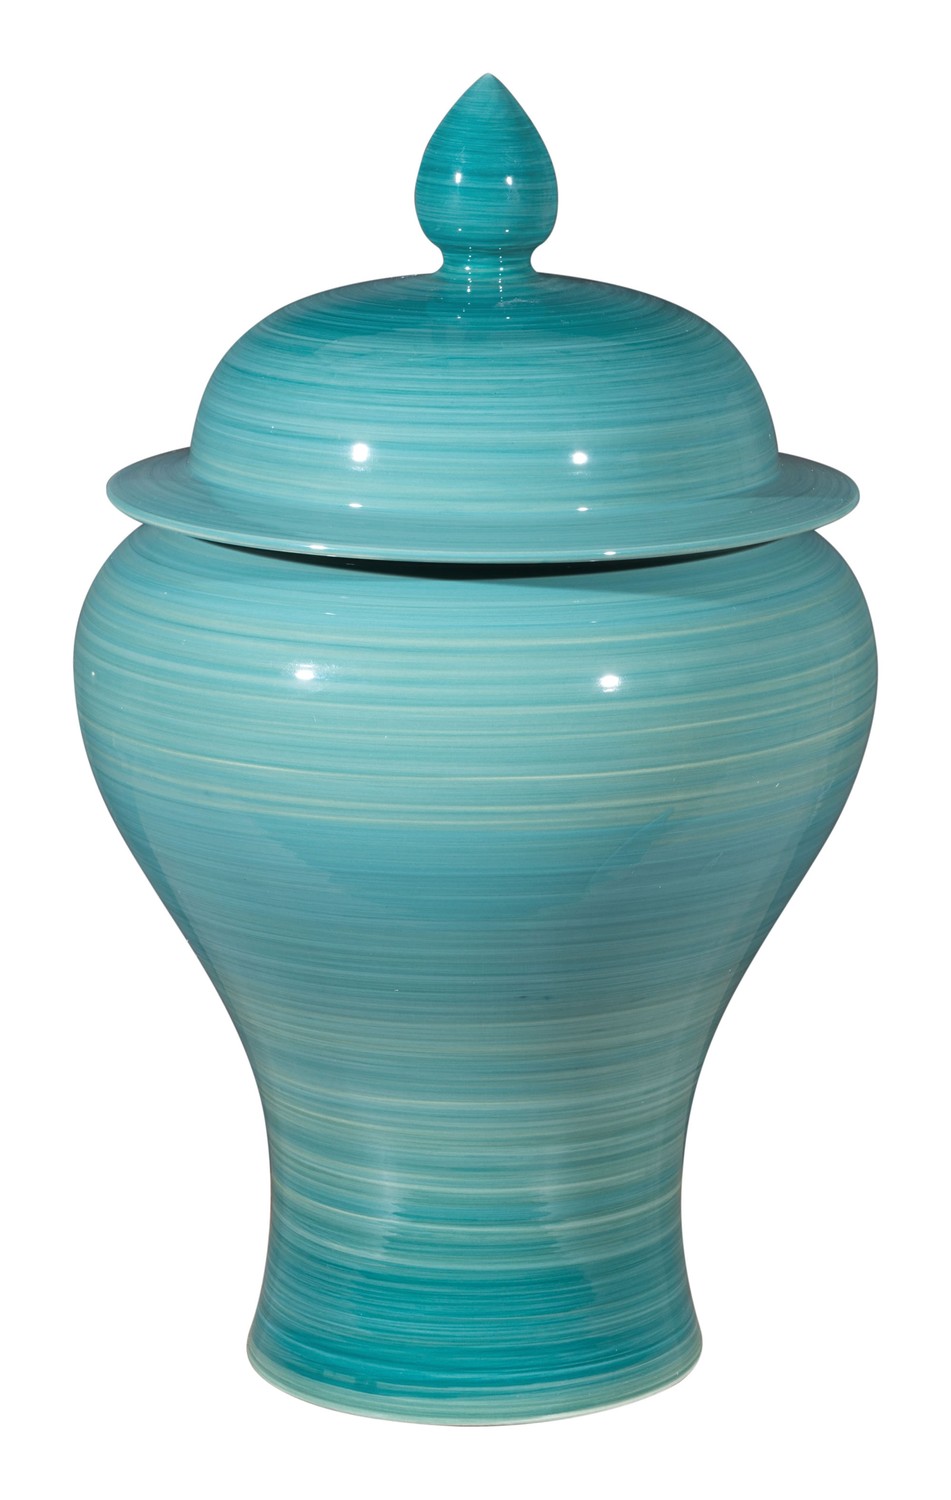 10.8" x 10.8" x 17.9" Blue, Ceramic, Jar